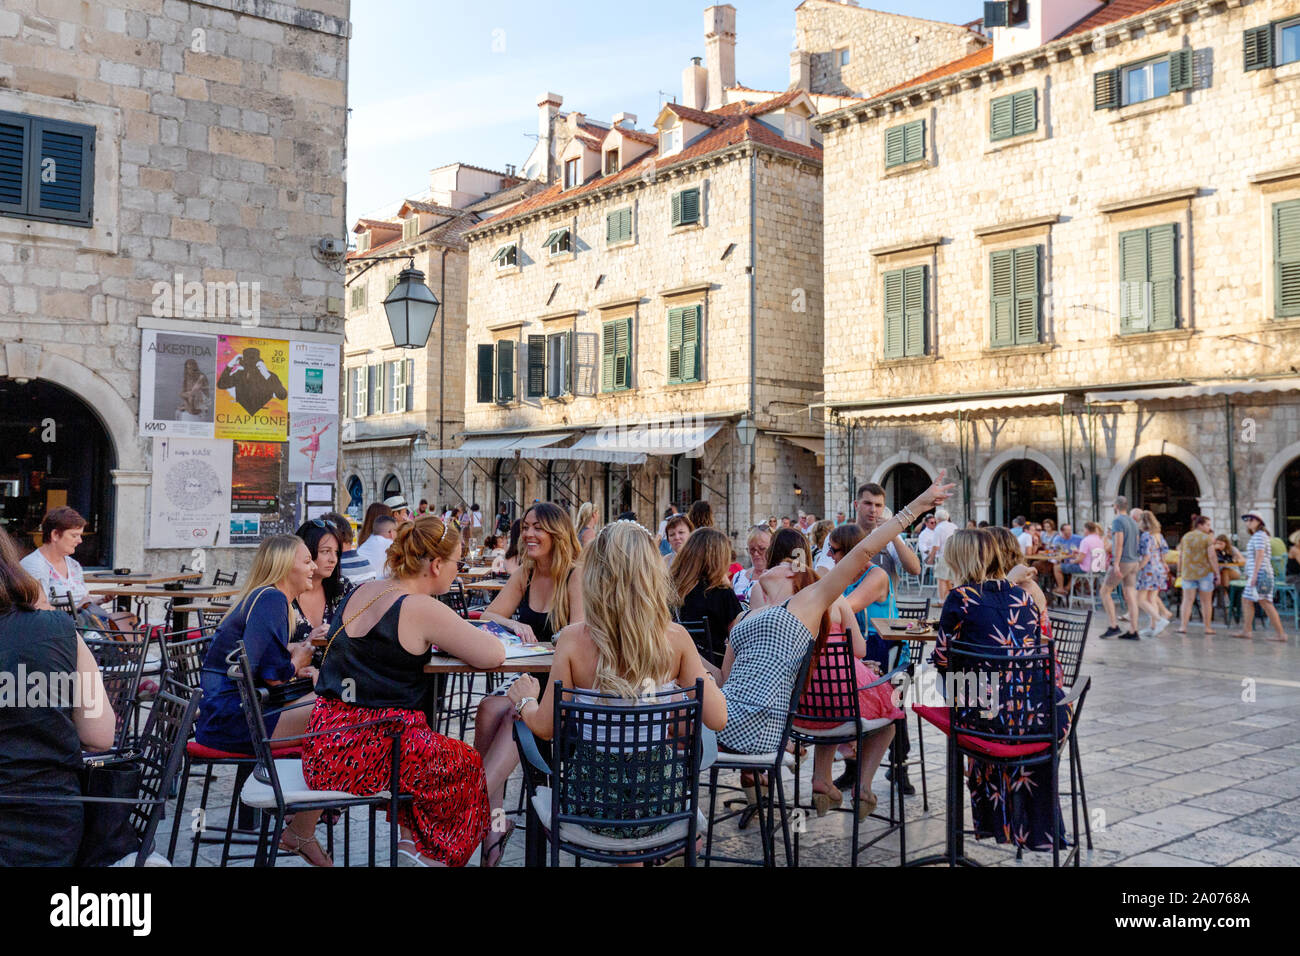 Dubrovnik turisti - gruppo di donne ai turisti in vacanza a un cafe in Stradun, la strada principale, Dubrovnik Città Vecchia, Dubrovnik Croazia Europa Foto Stock